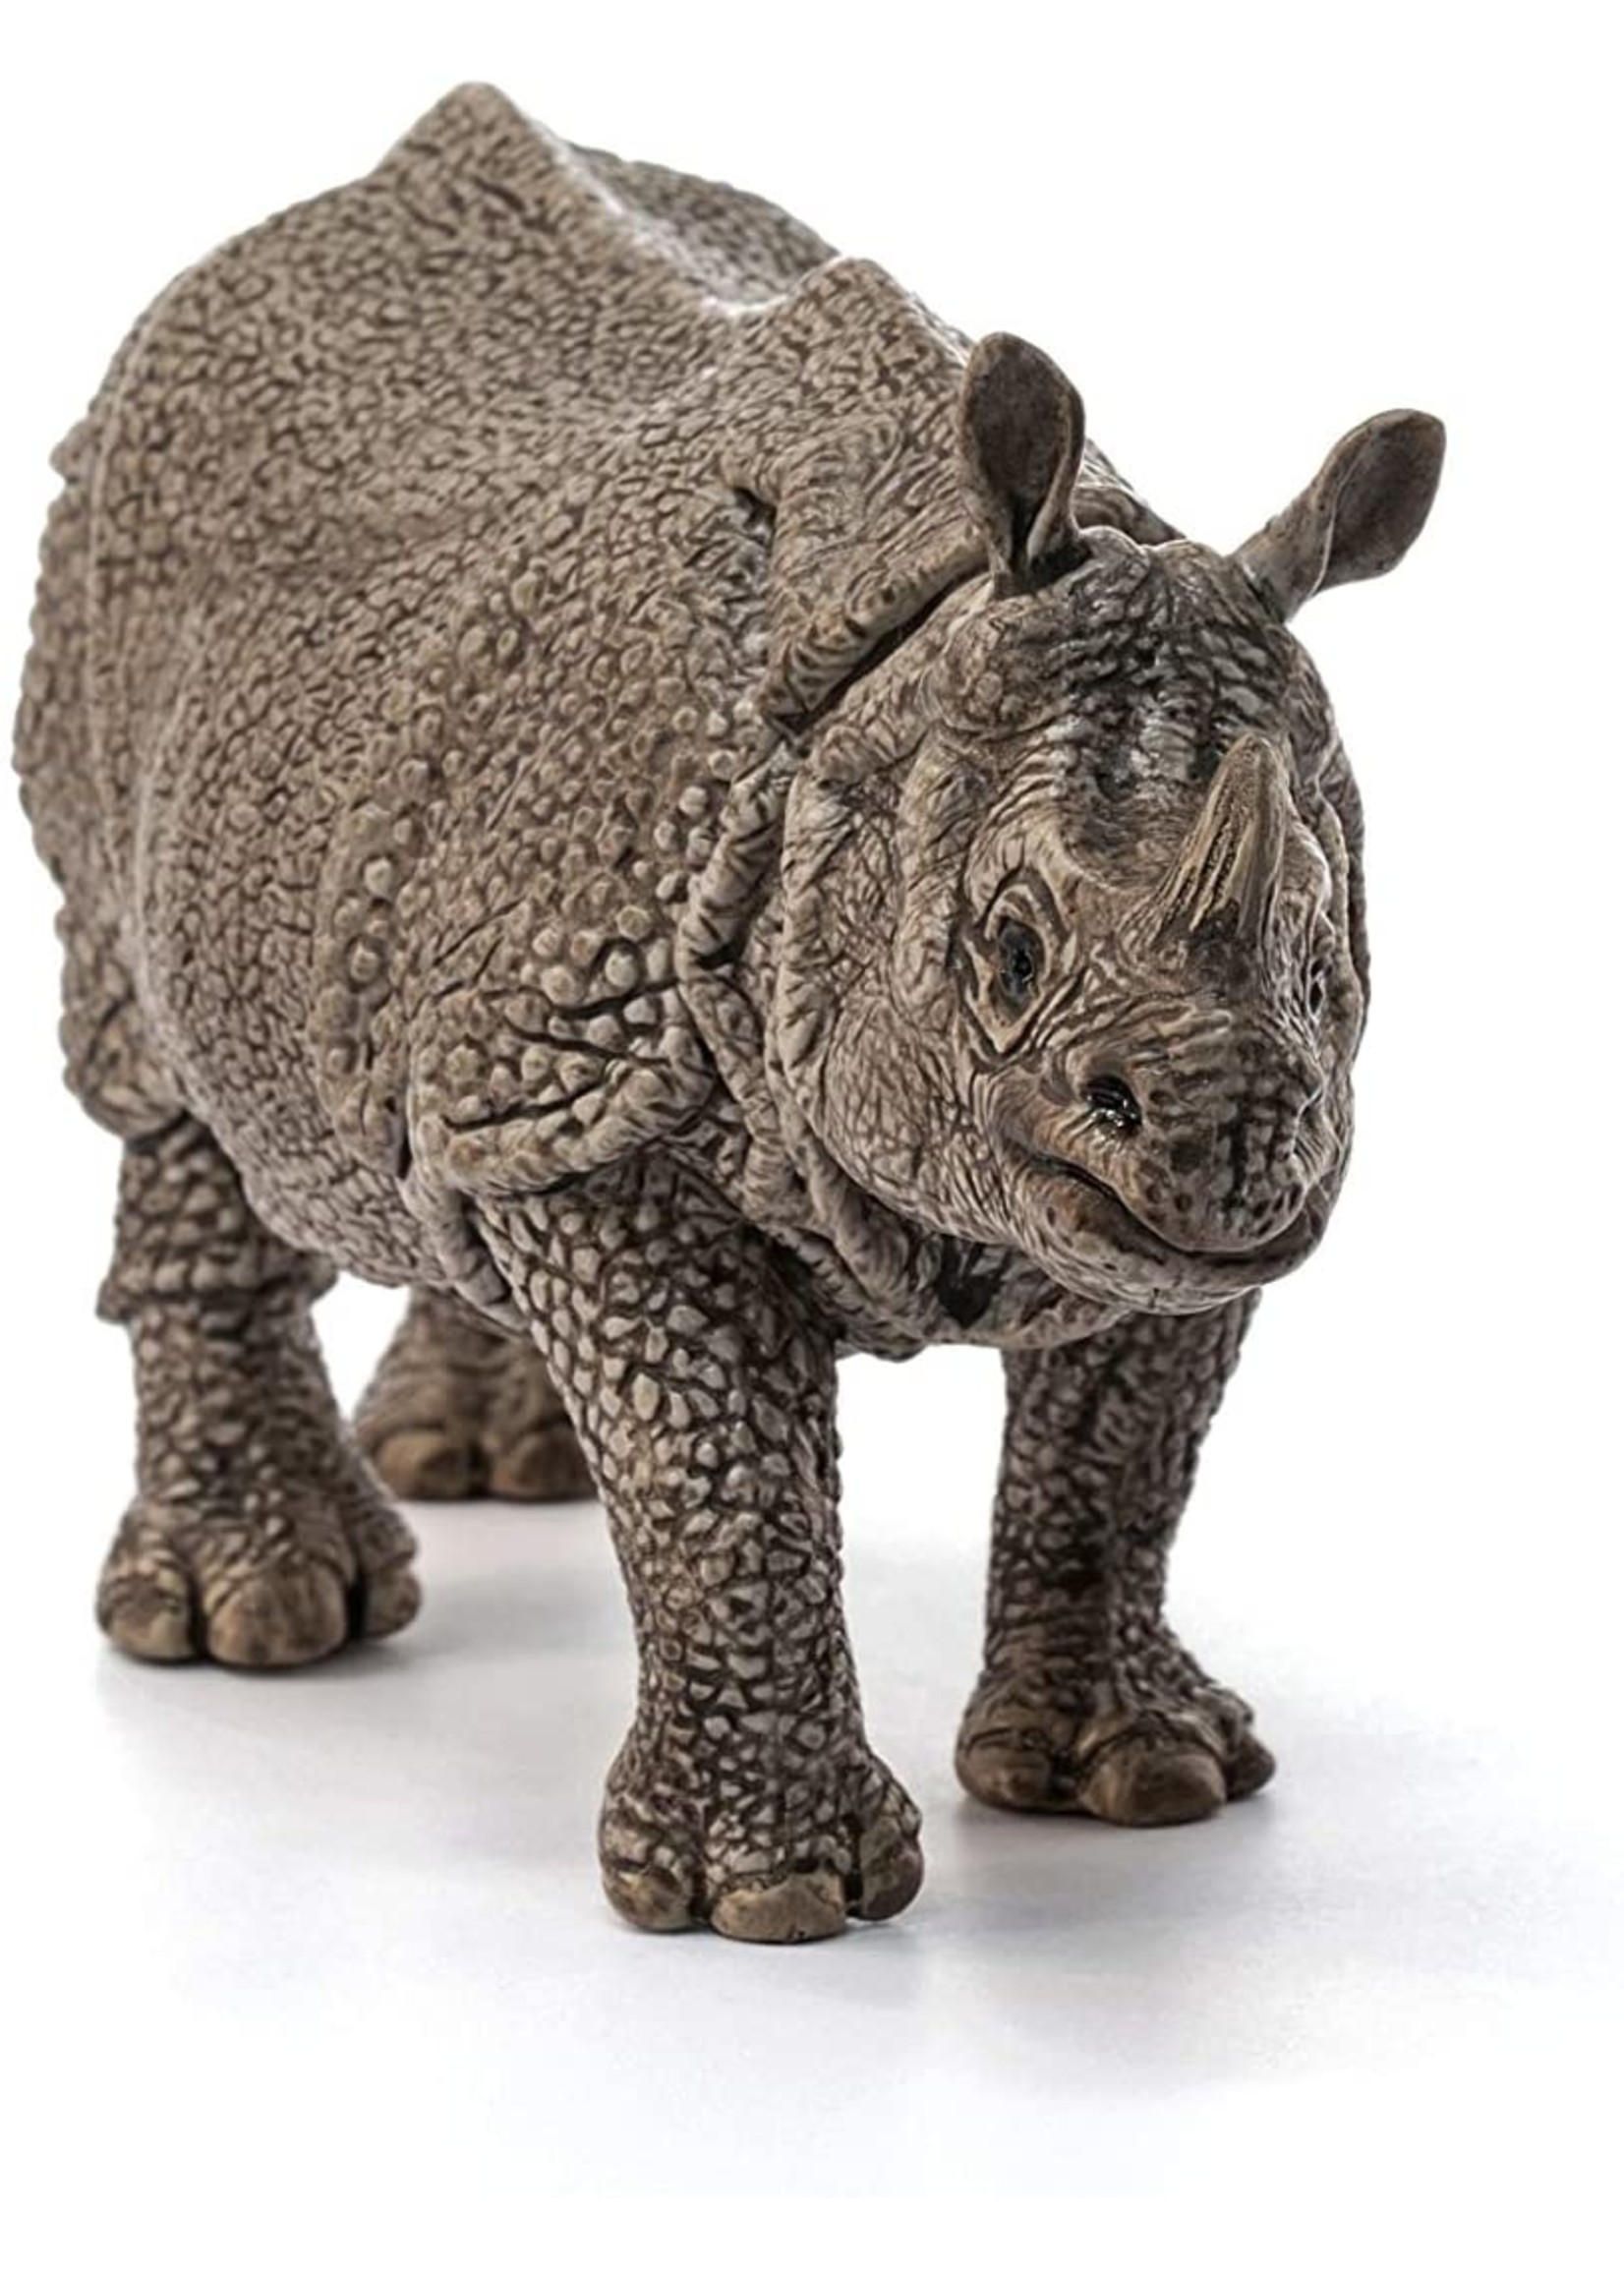 Schleich 14816 - Indian Rhinoceros